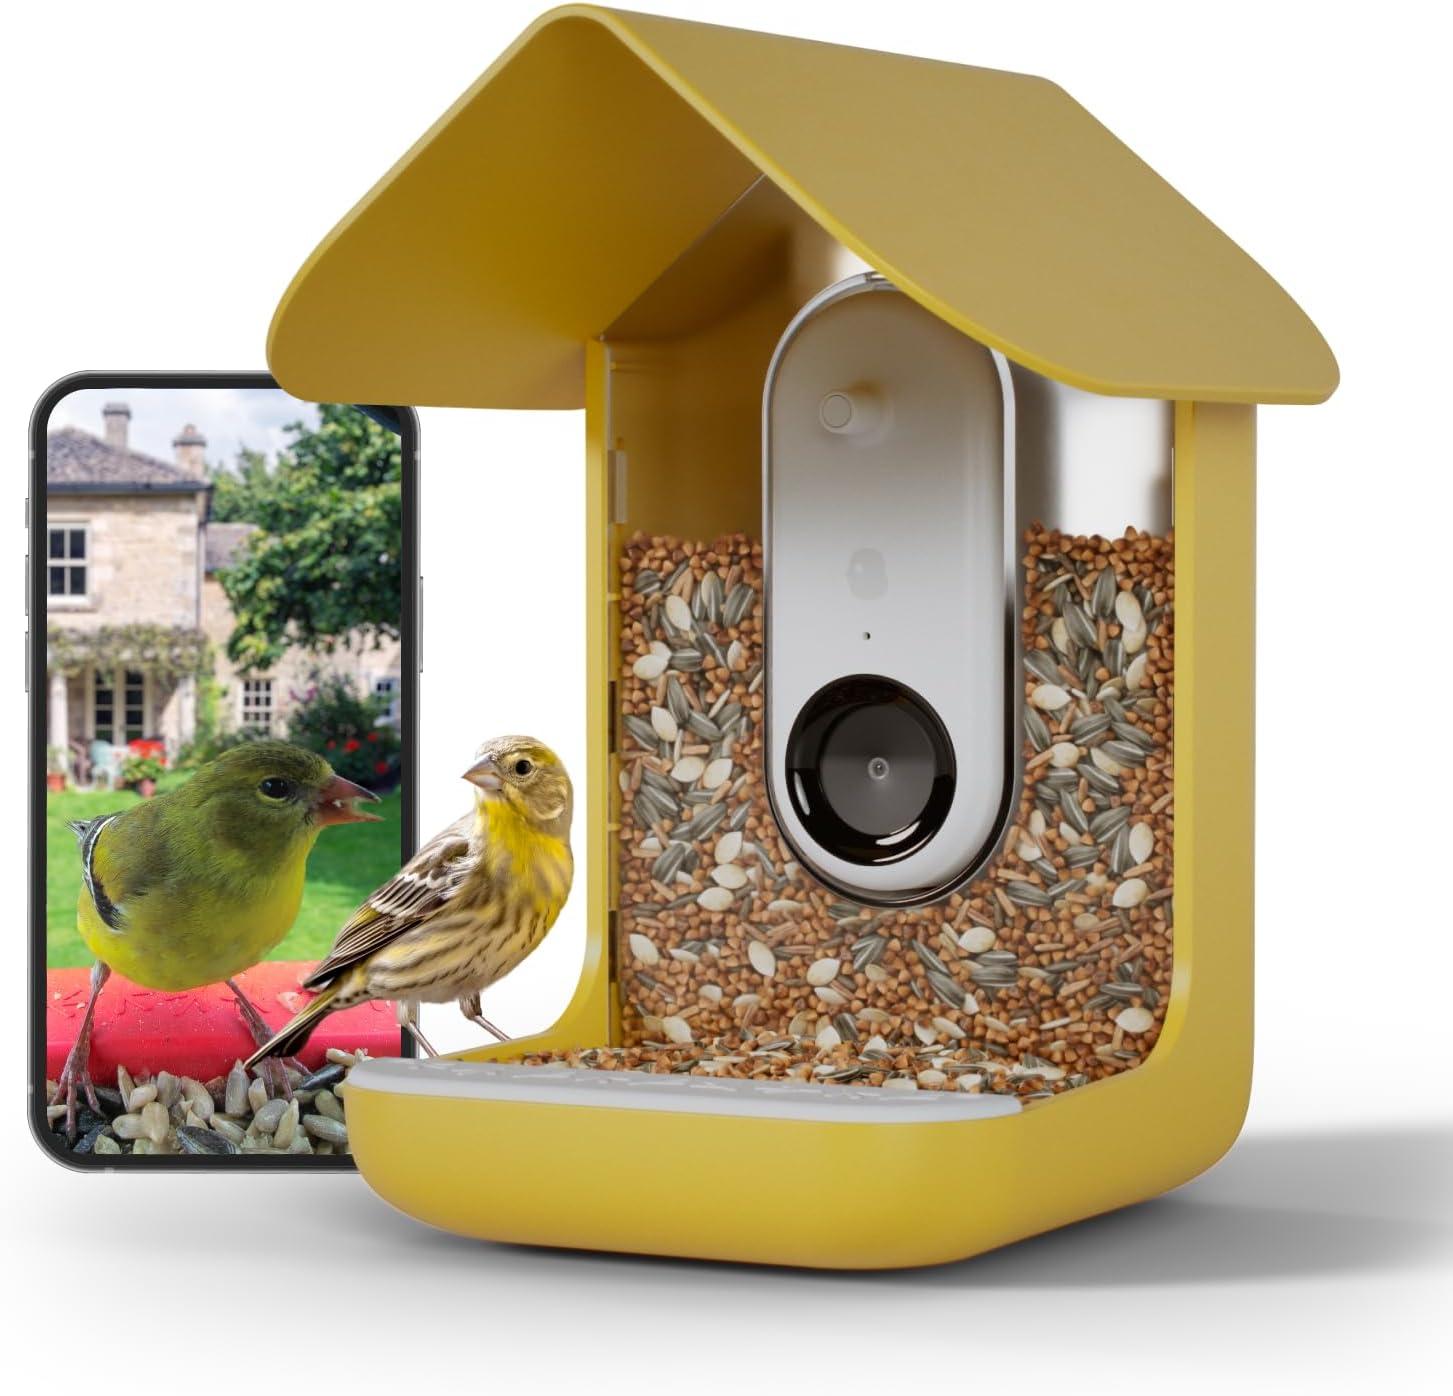 A bird eats at a Bird Buddy feeder system